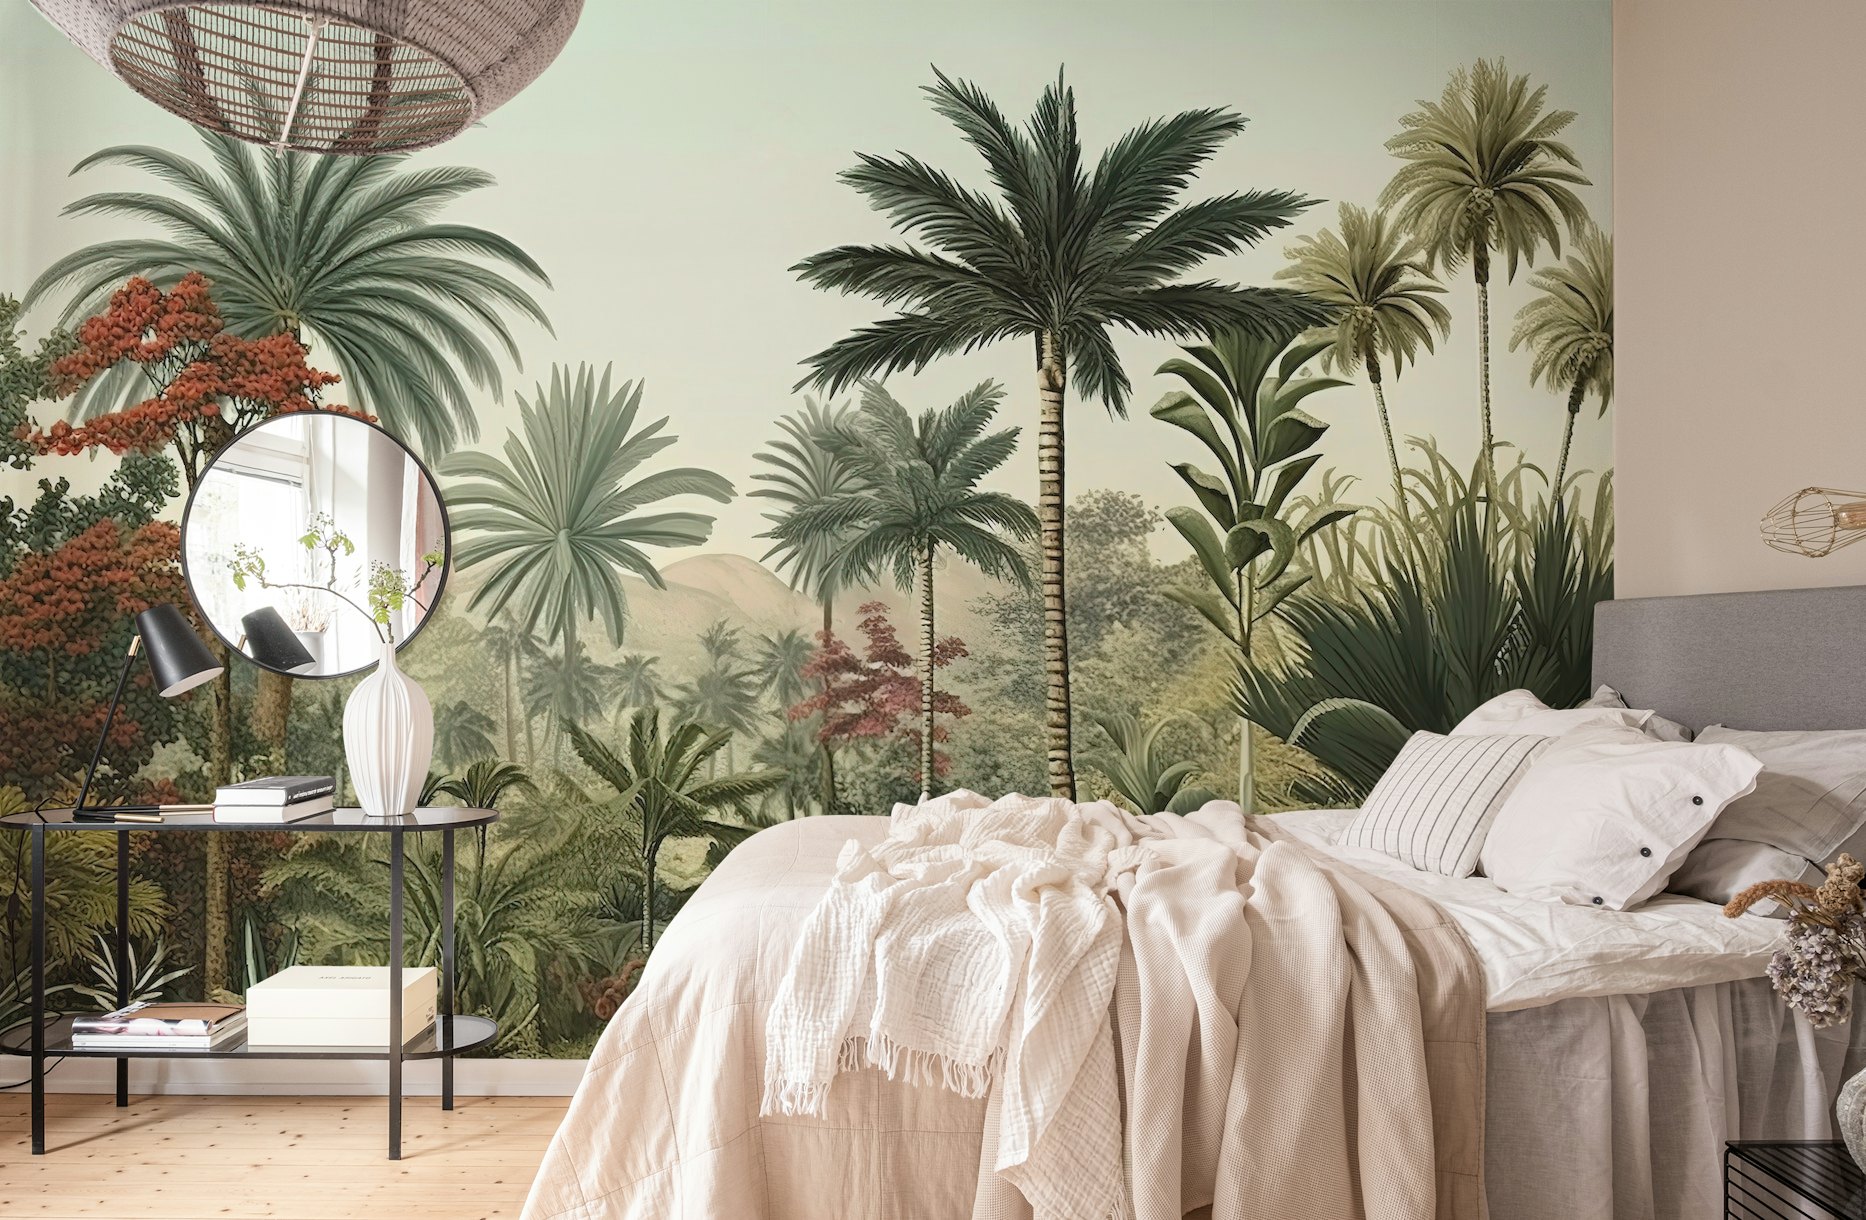 Palms Garden wallpaper